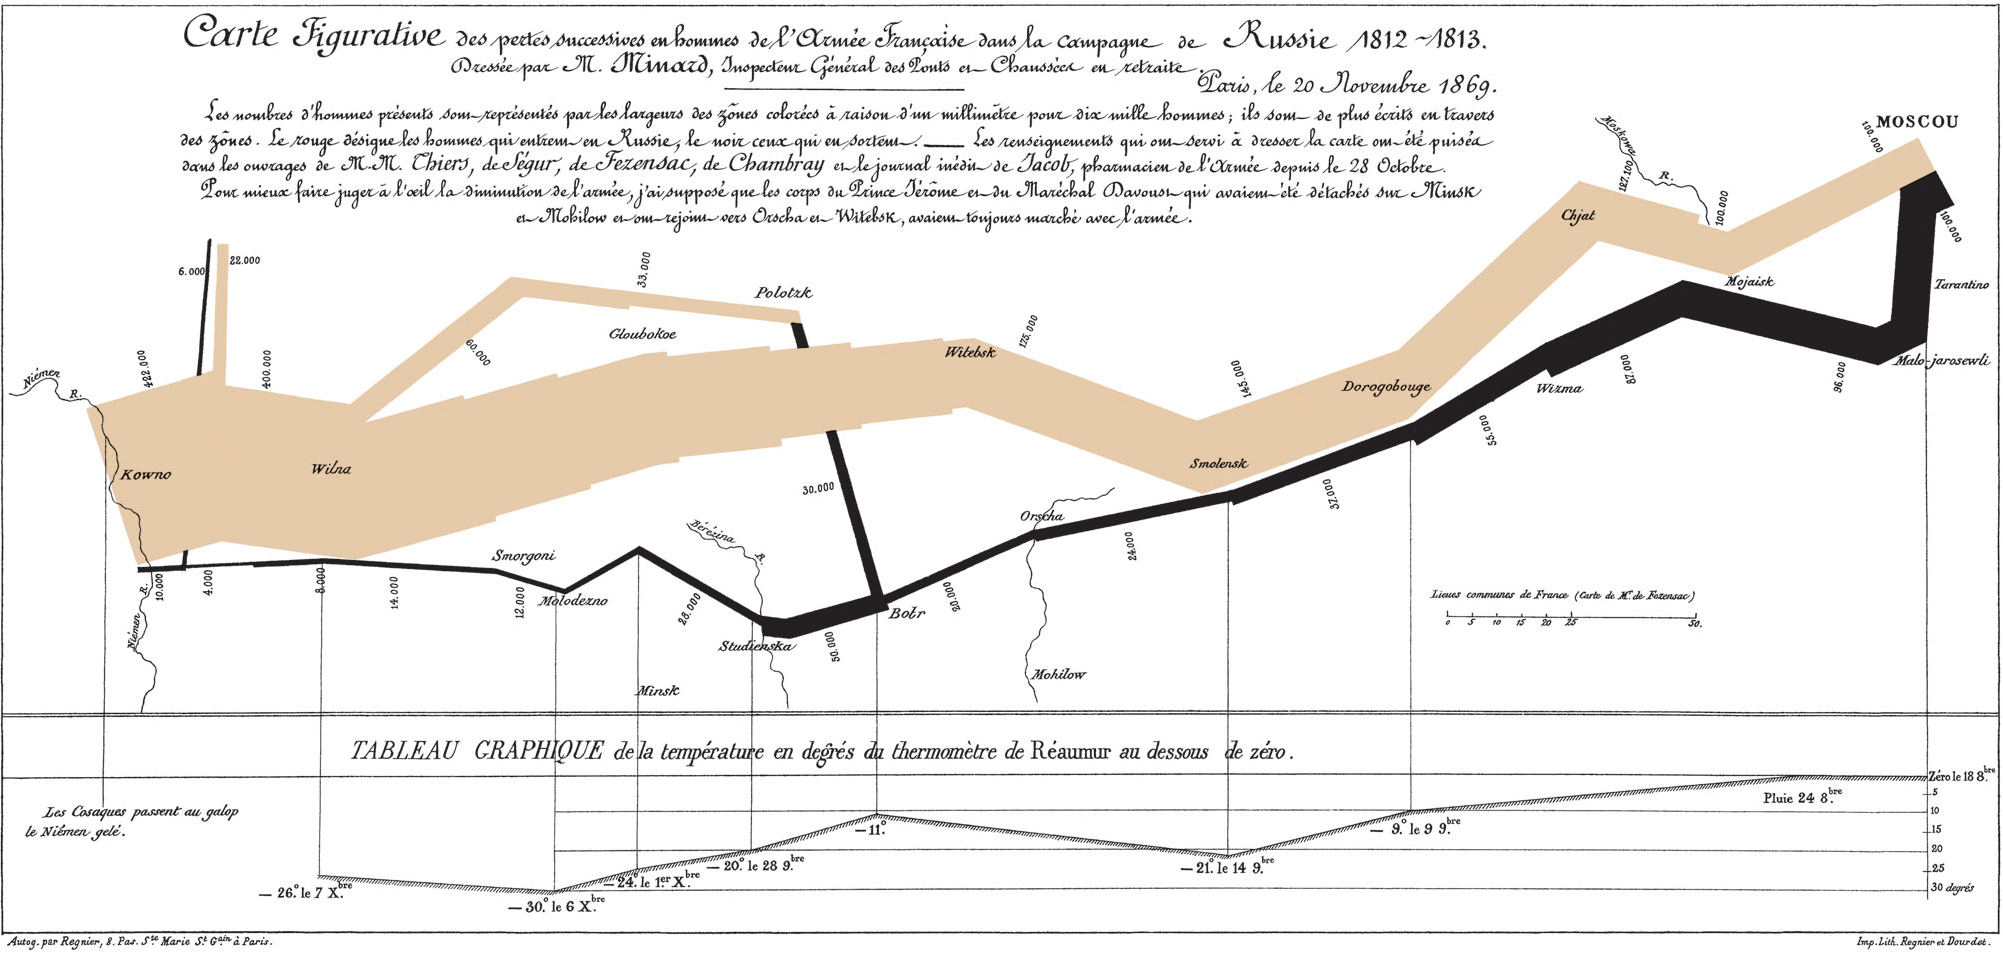 Quizás el mejor gráfico de la historia: Las bajas de Napoleón en su campaña hacia Rusia de 1812-1813. (Charles Joseph Minard, 1869).